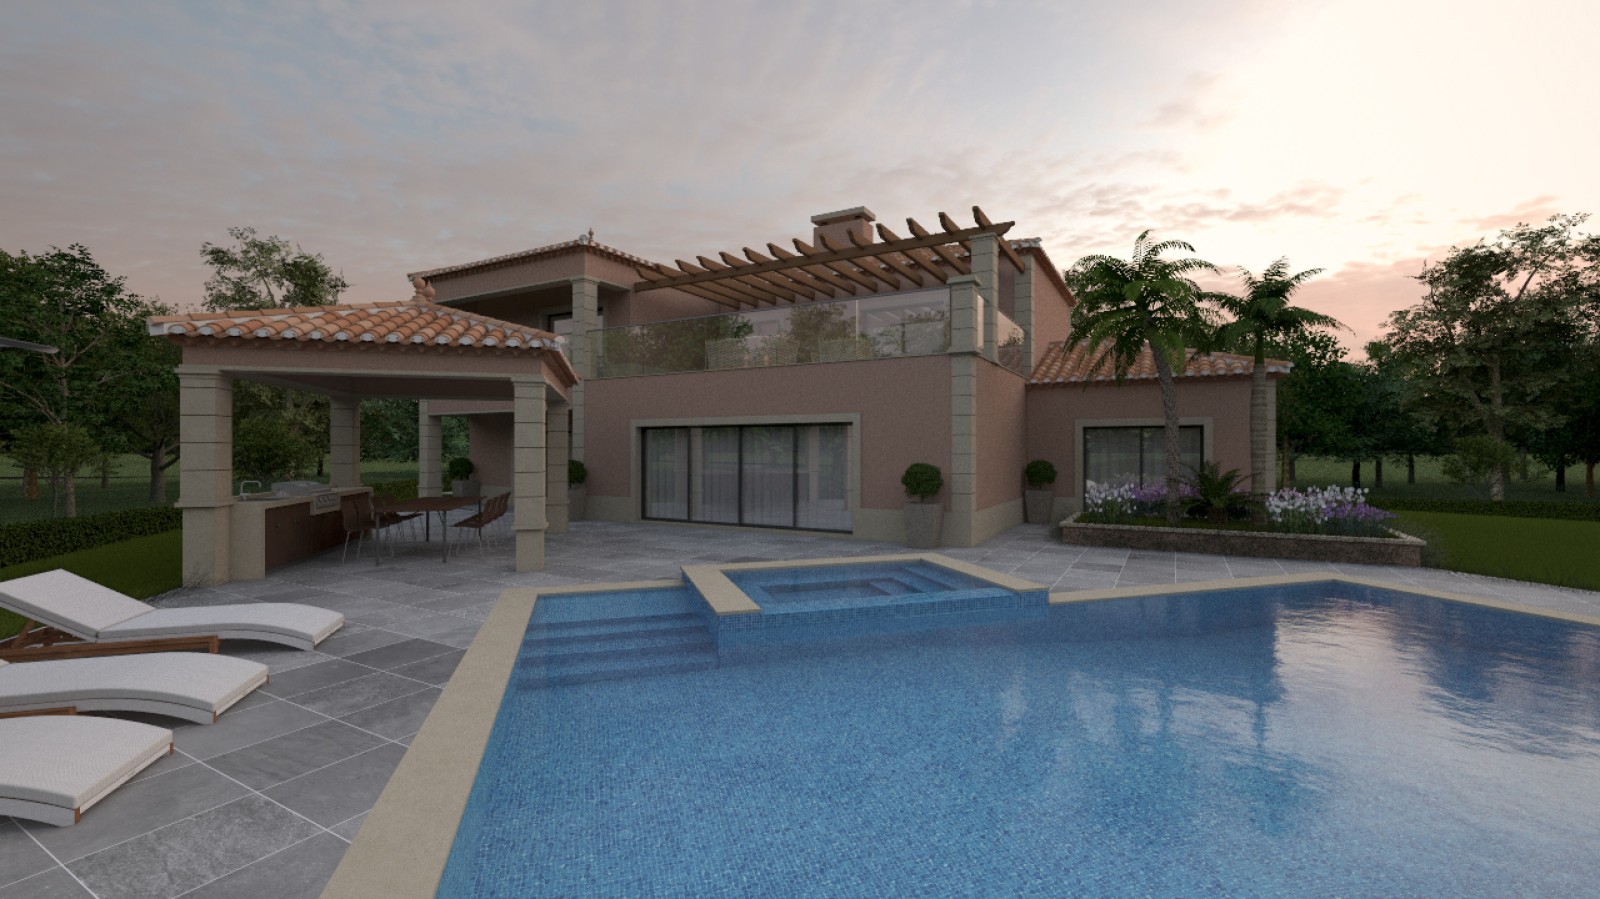 Moradia V4 com piscina, para venda em Portimão, Algarve_231713